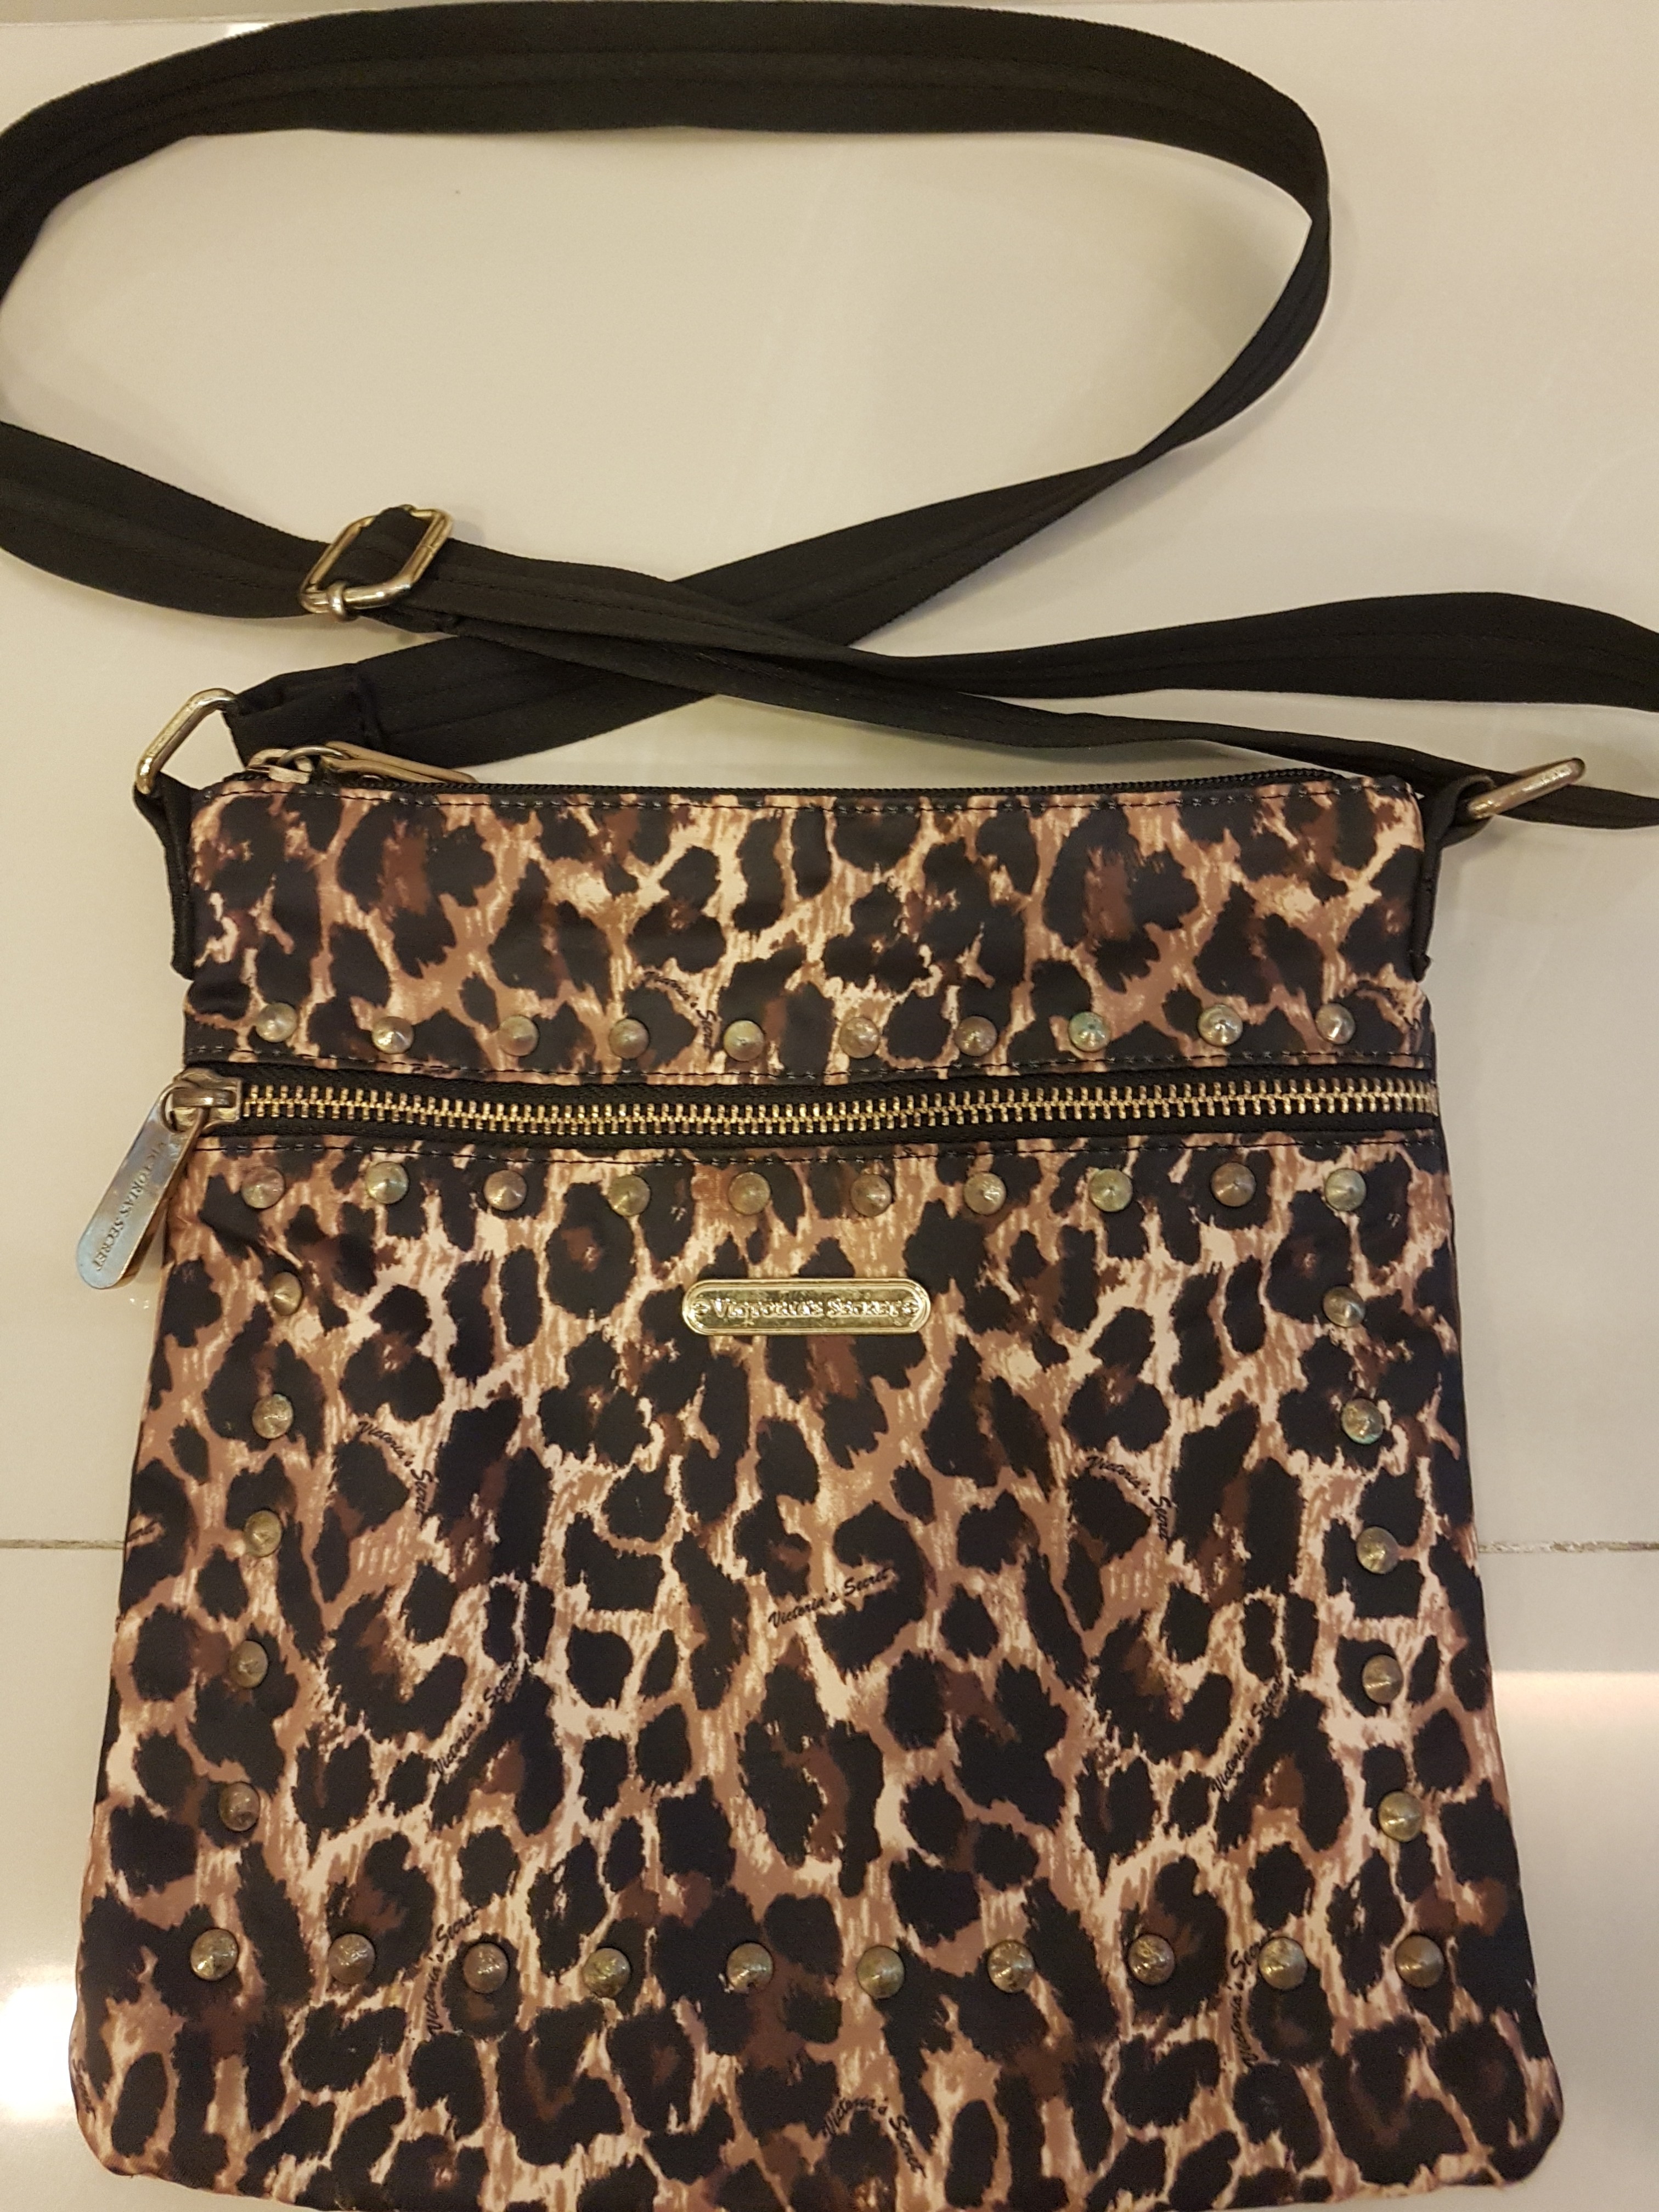 Cheetah Print Victoria Secret Bag Original price ₨15,000 Selling